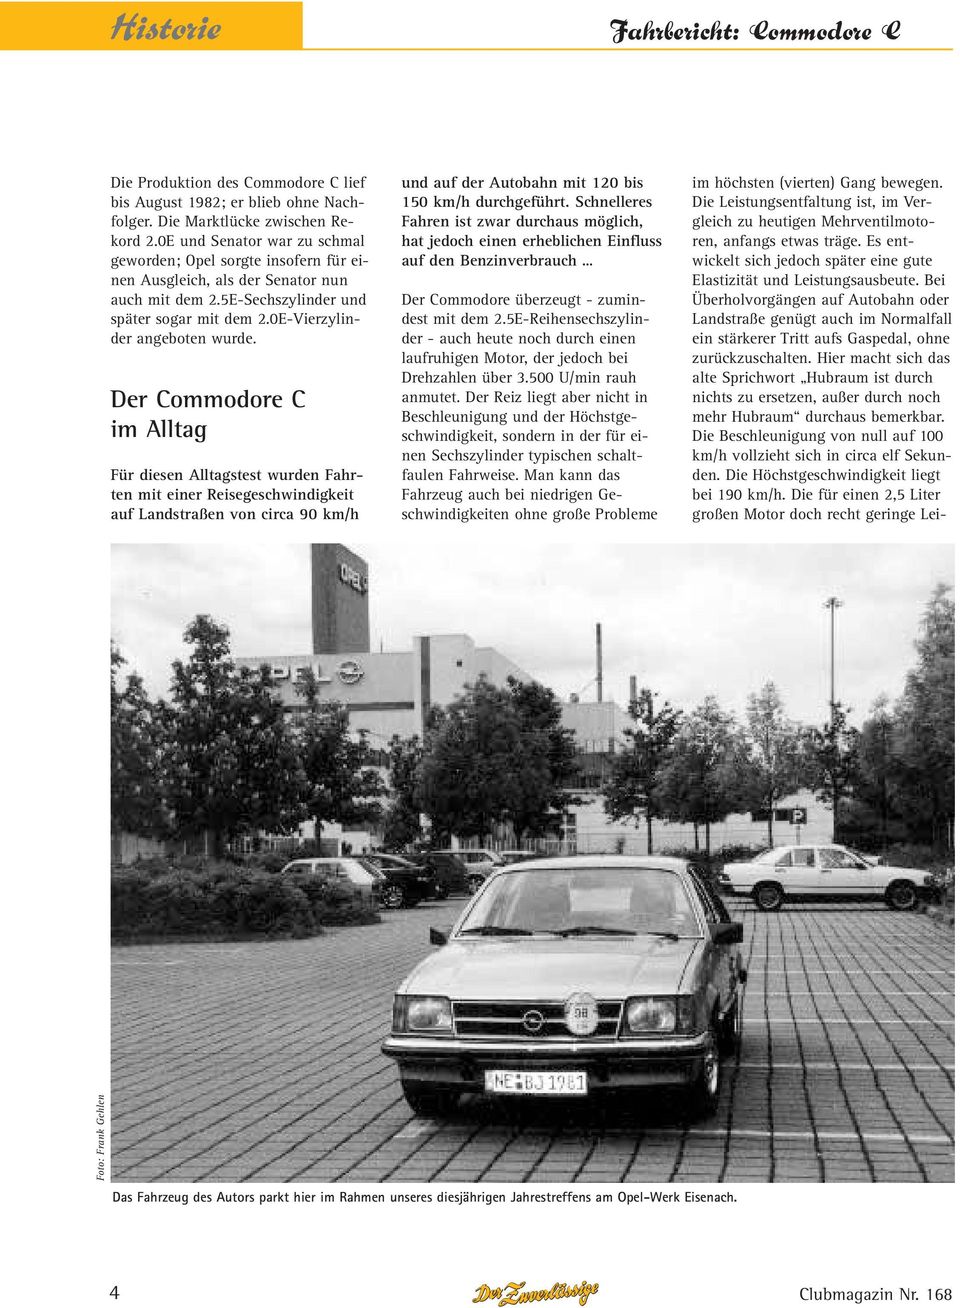 Der Commodore C im Alltag Für diesen Alltagstest wurden Fahrten mit einer Reisegeschwindigkeit auf Landstraßen von circa 90 km/h und auf der Autobahn mit 120 bis 150 km/h durchgeführt.